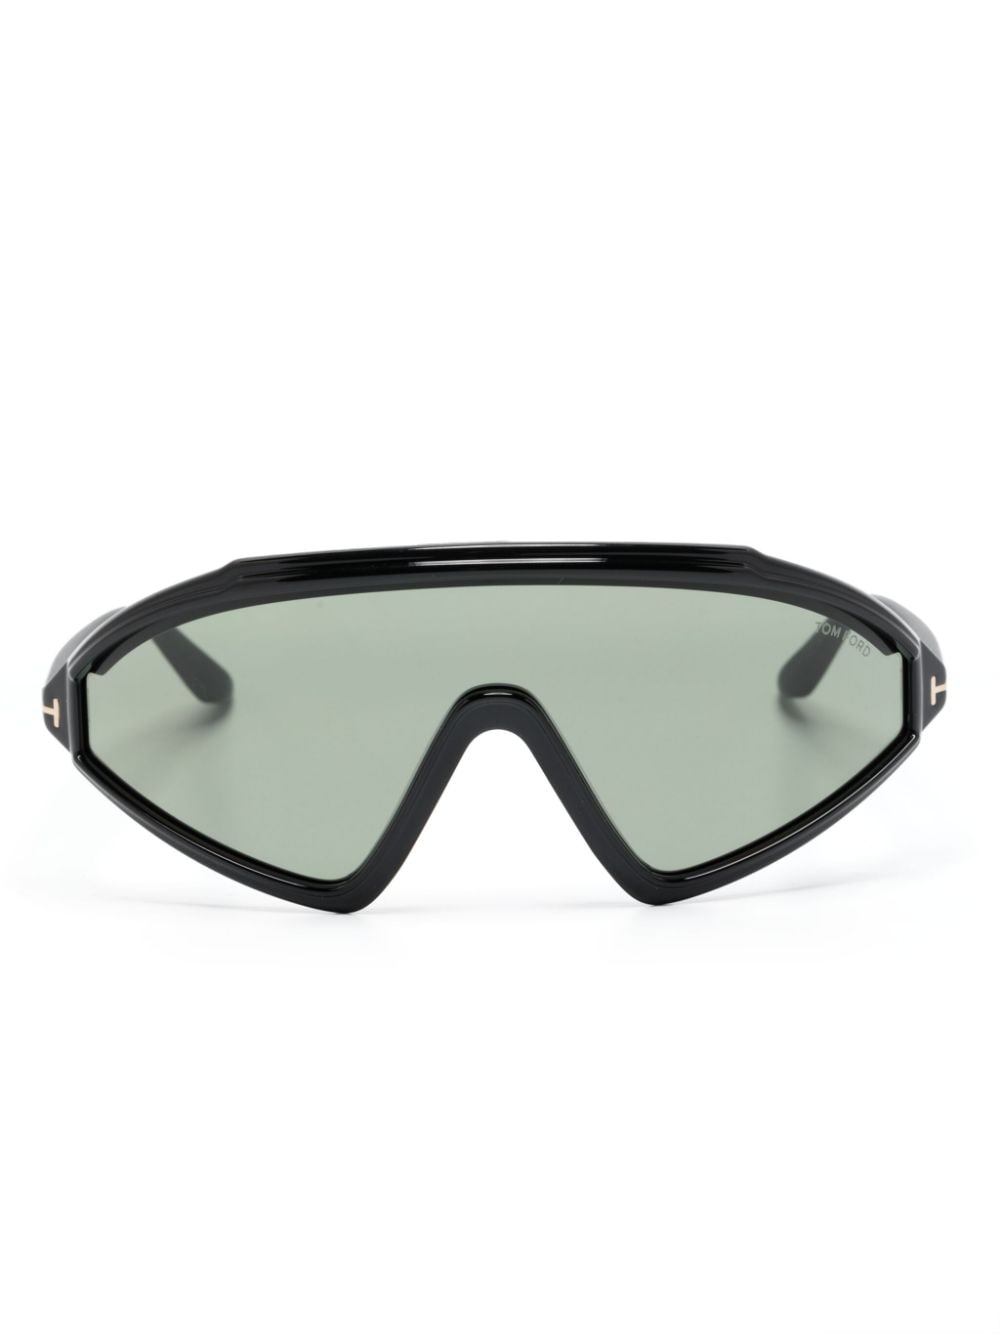 Tom Ford Lorna Shield-frame Sunglasses In Black